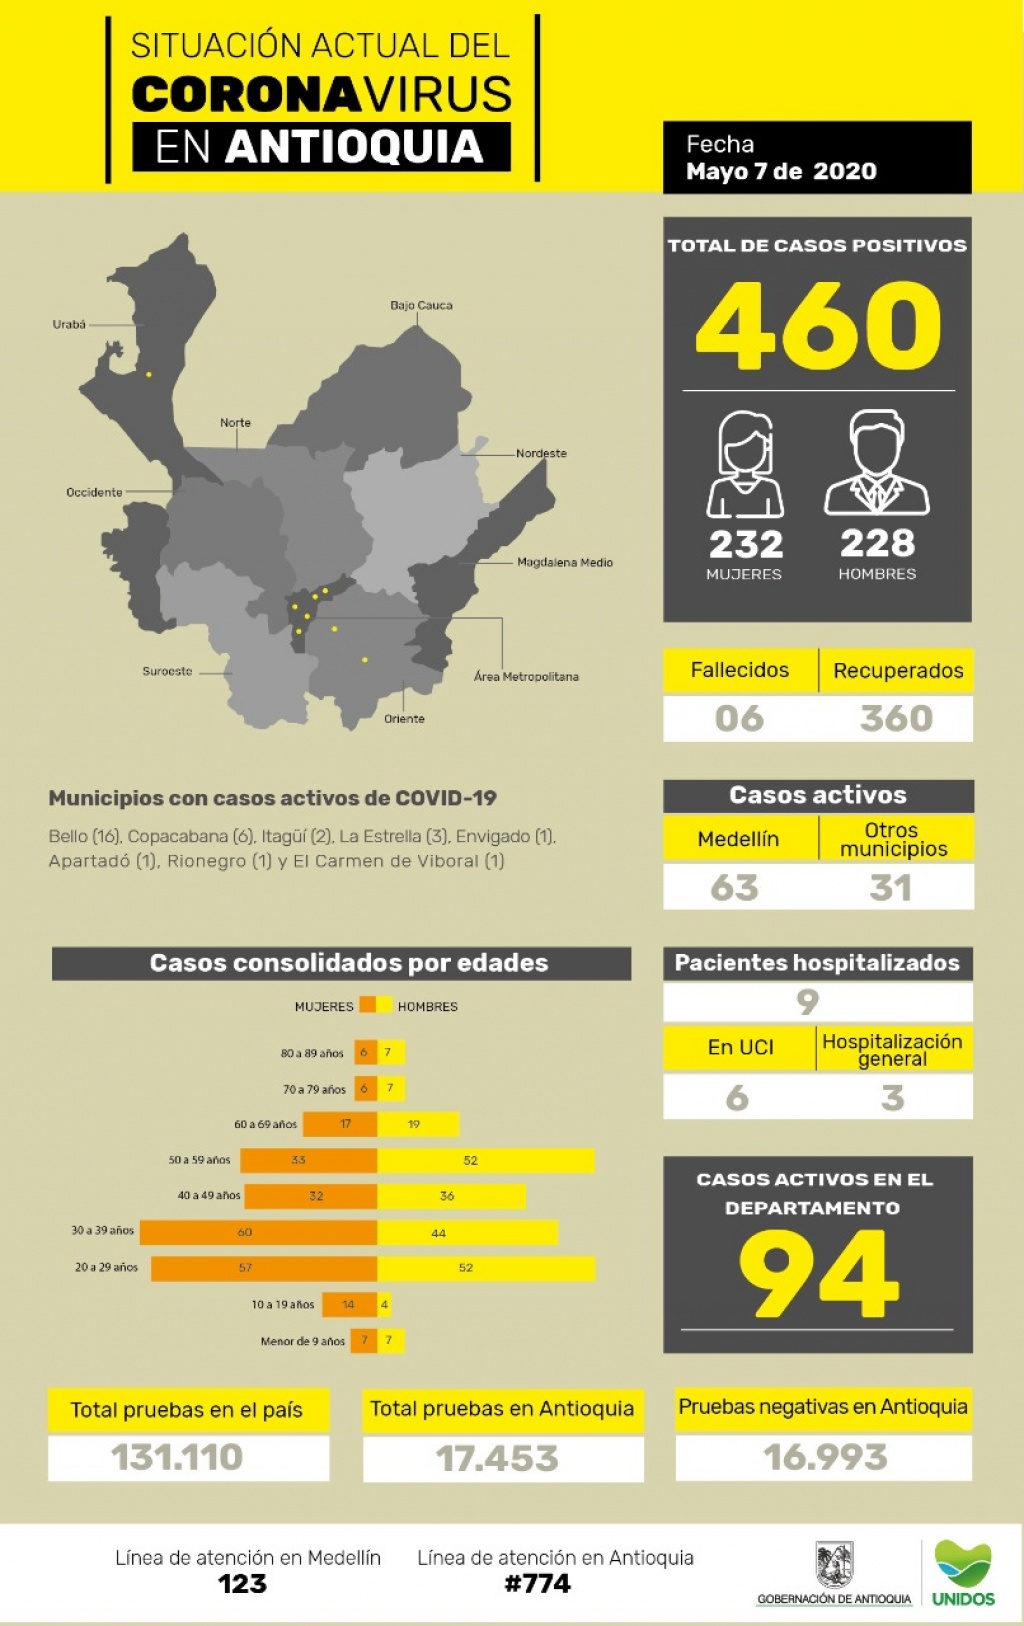 Con 4 nuevos casos reportados, el número total de personas contagiadas por el COVID-19 en Antioquia llega a 460